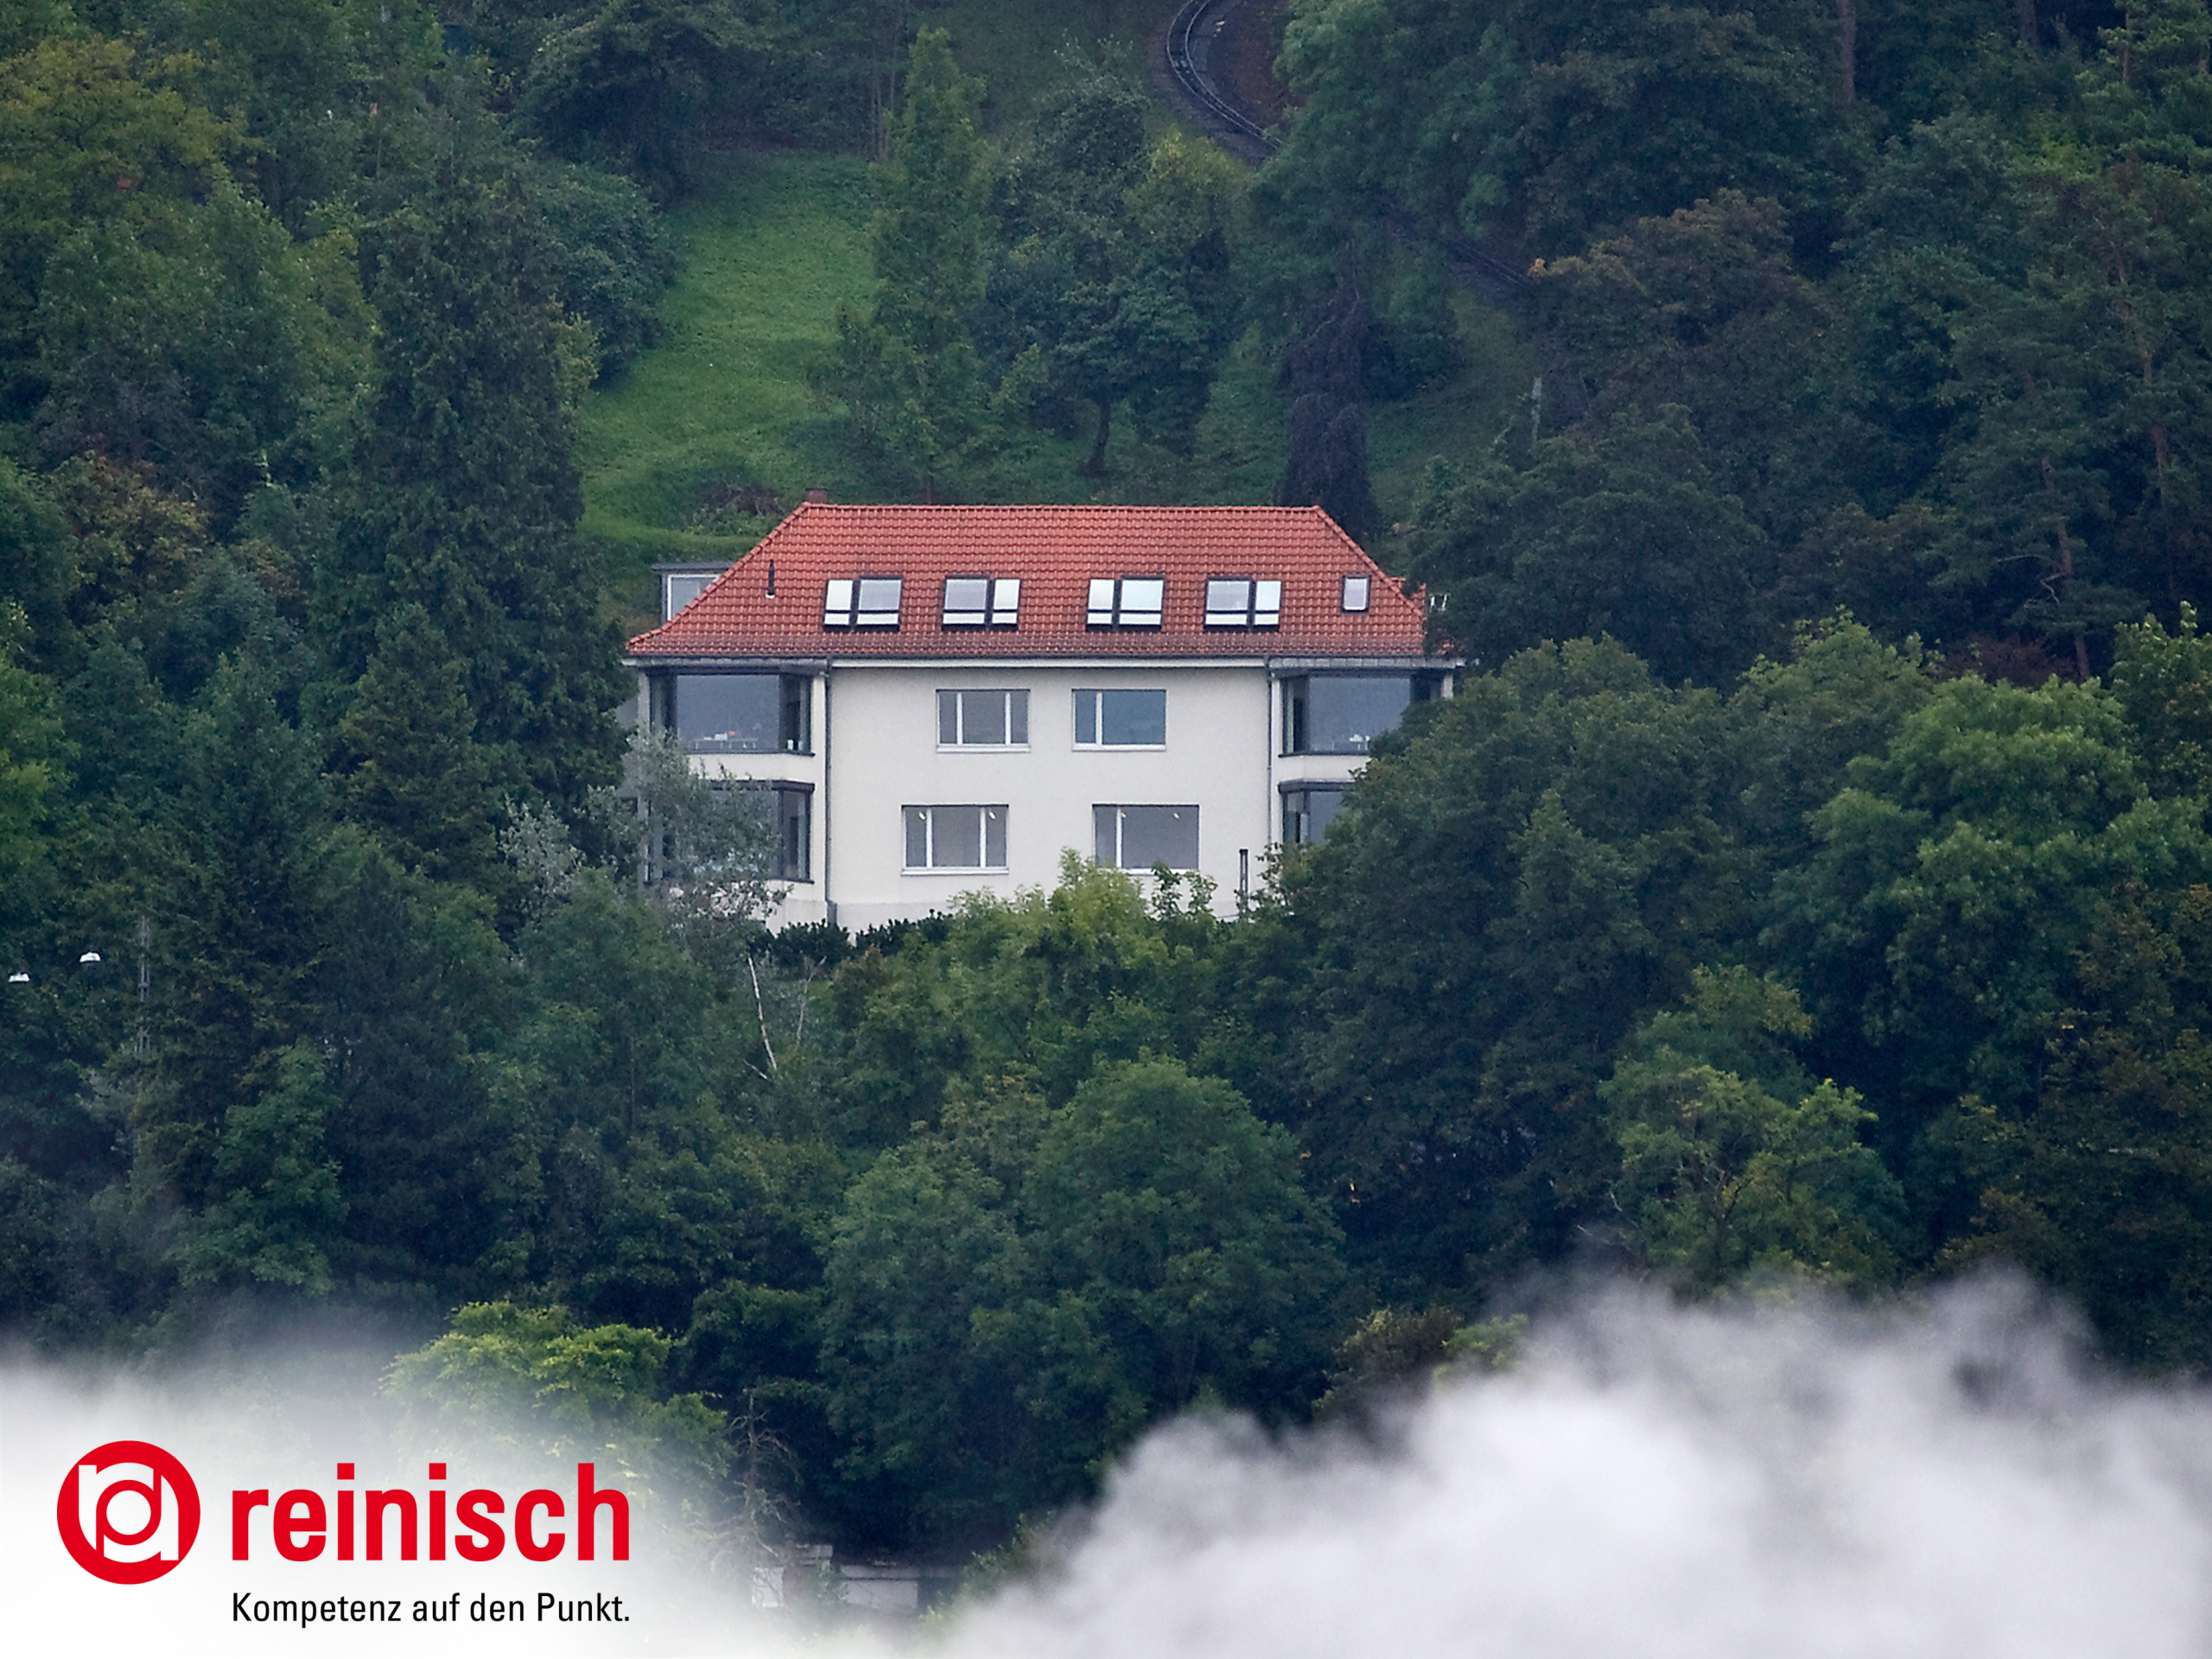 reinisch GmbH is establishing a new subsidiary in Stuttgart